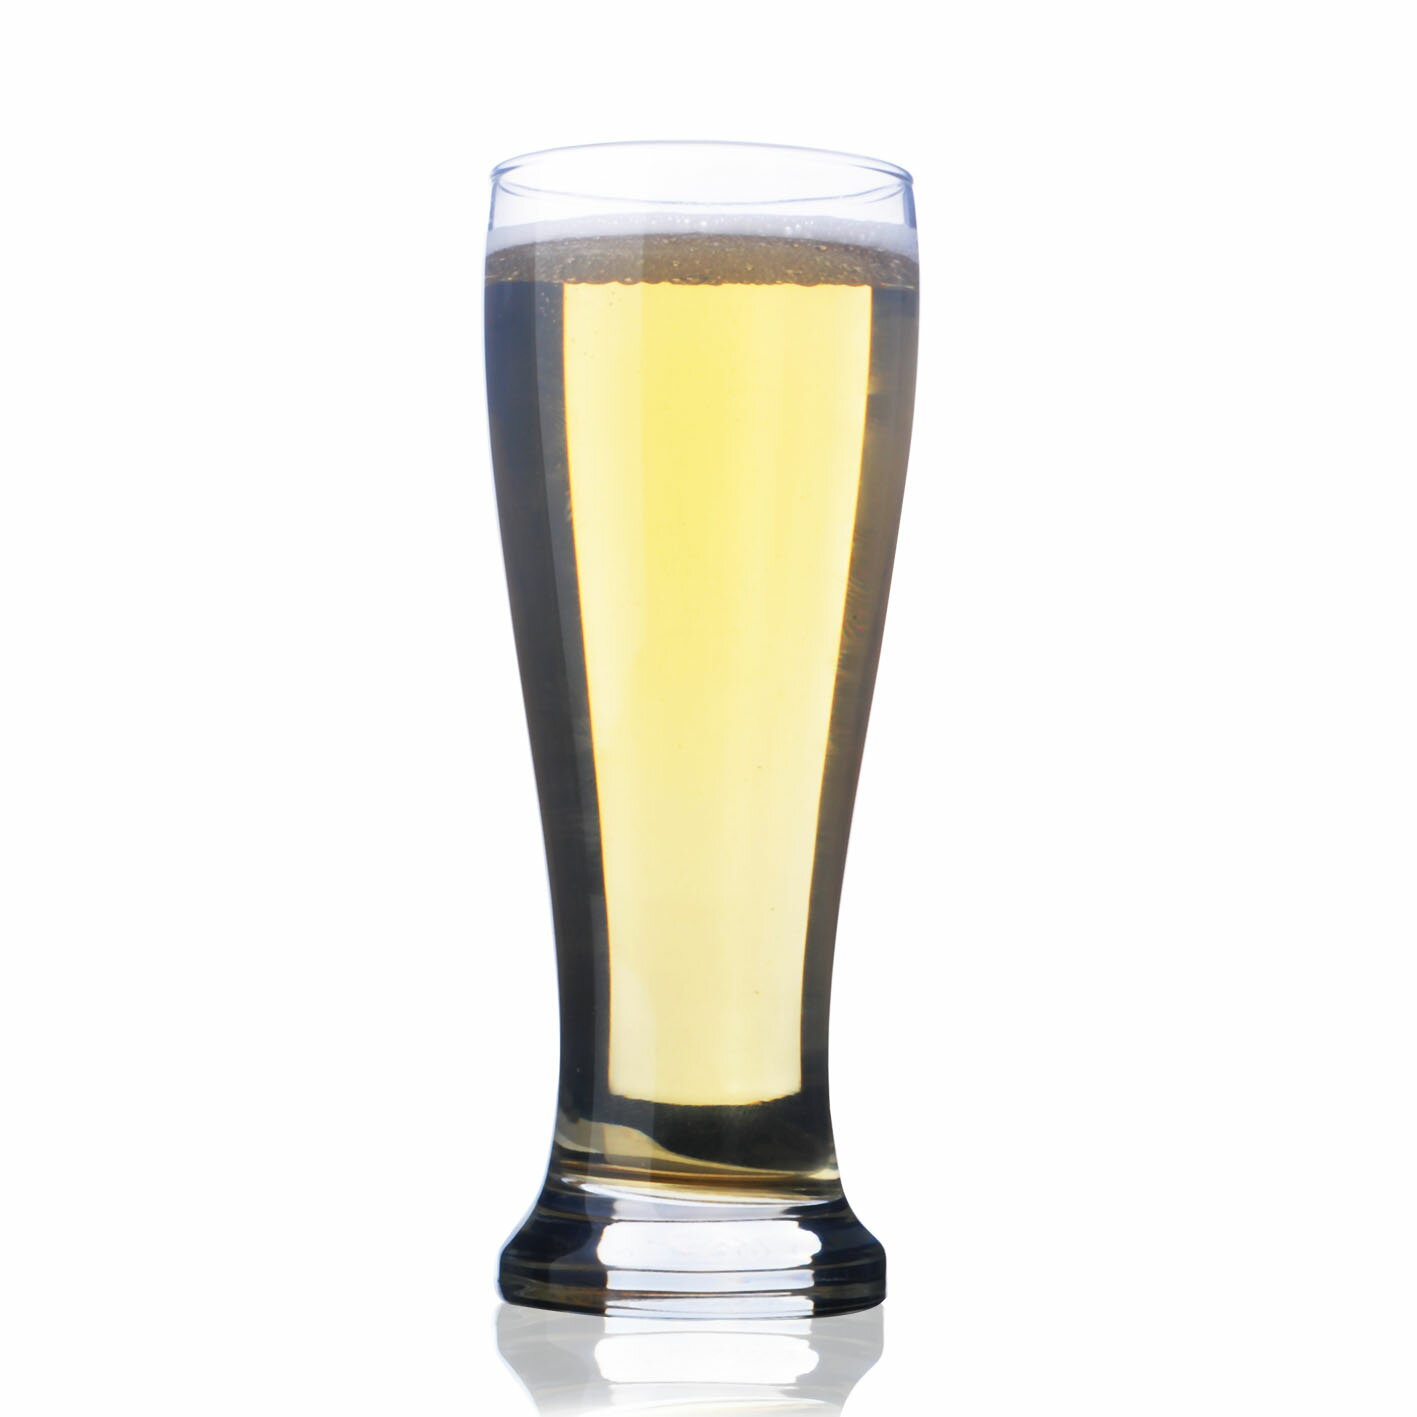 450ml圓珠腰形啤酒杯玻璃杯扎啤杯多用果汁杯水杯冷飲杯創意家居